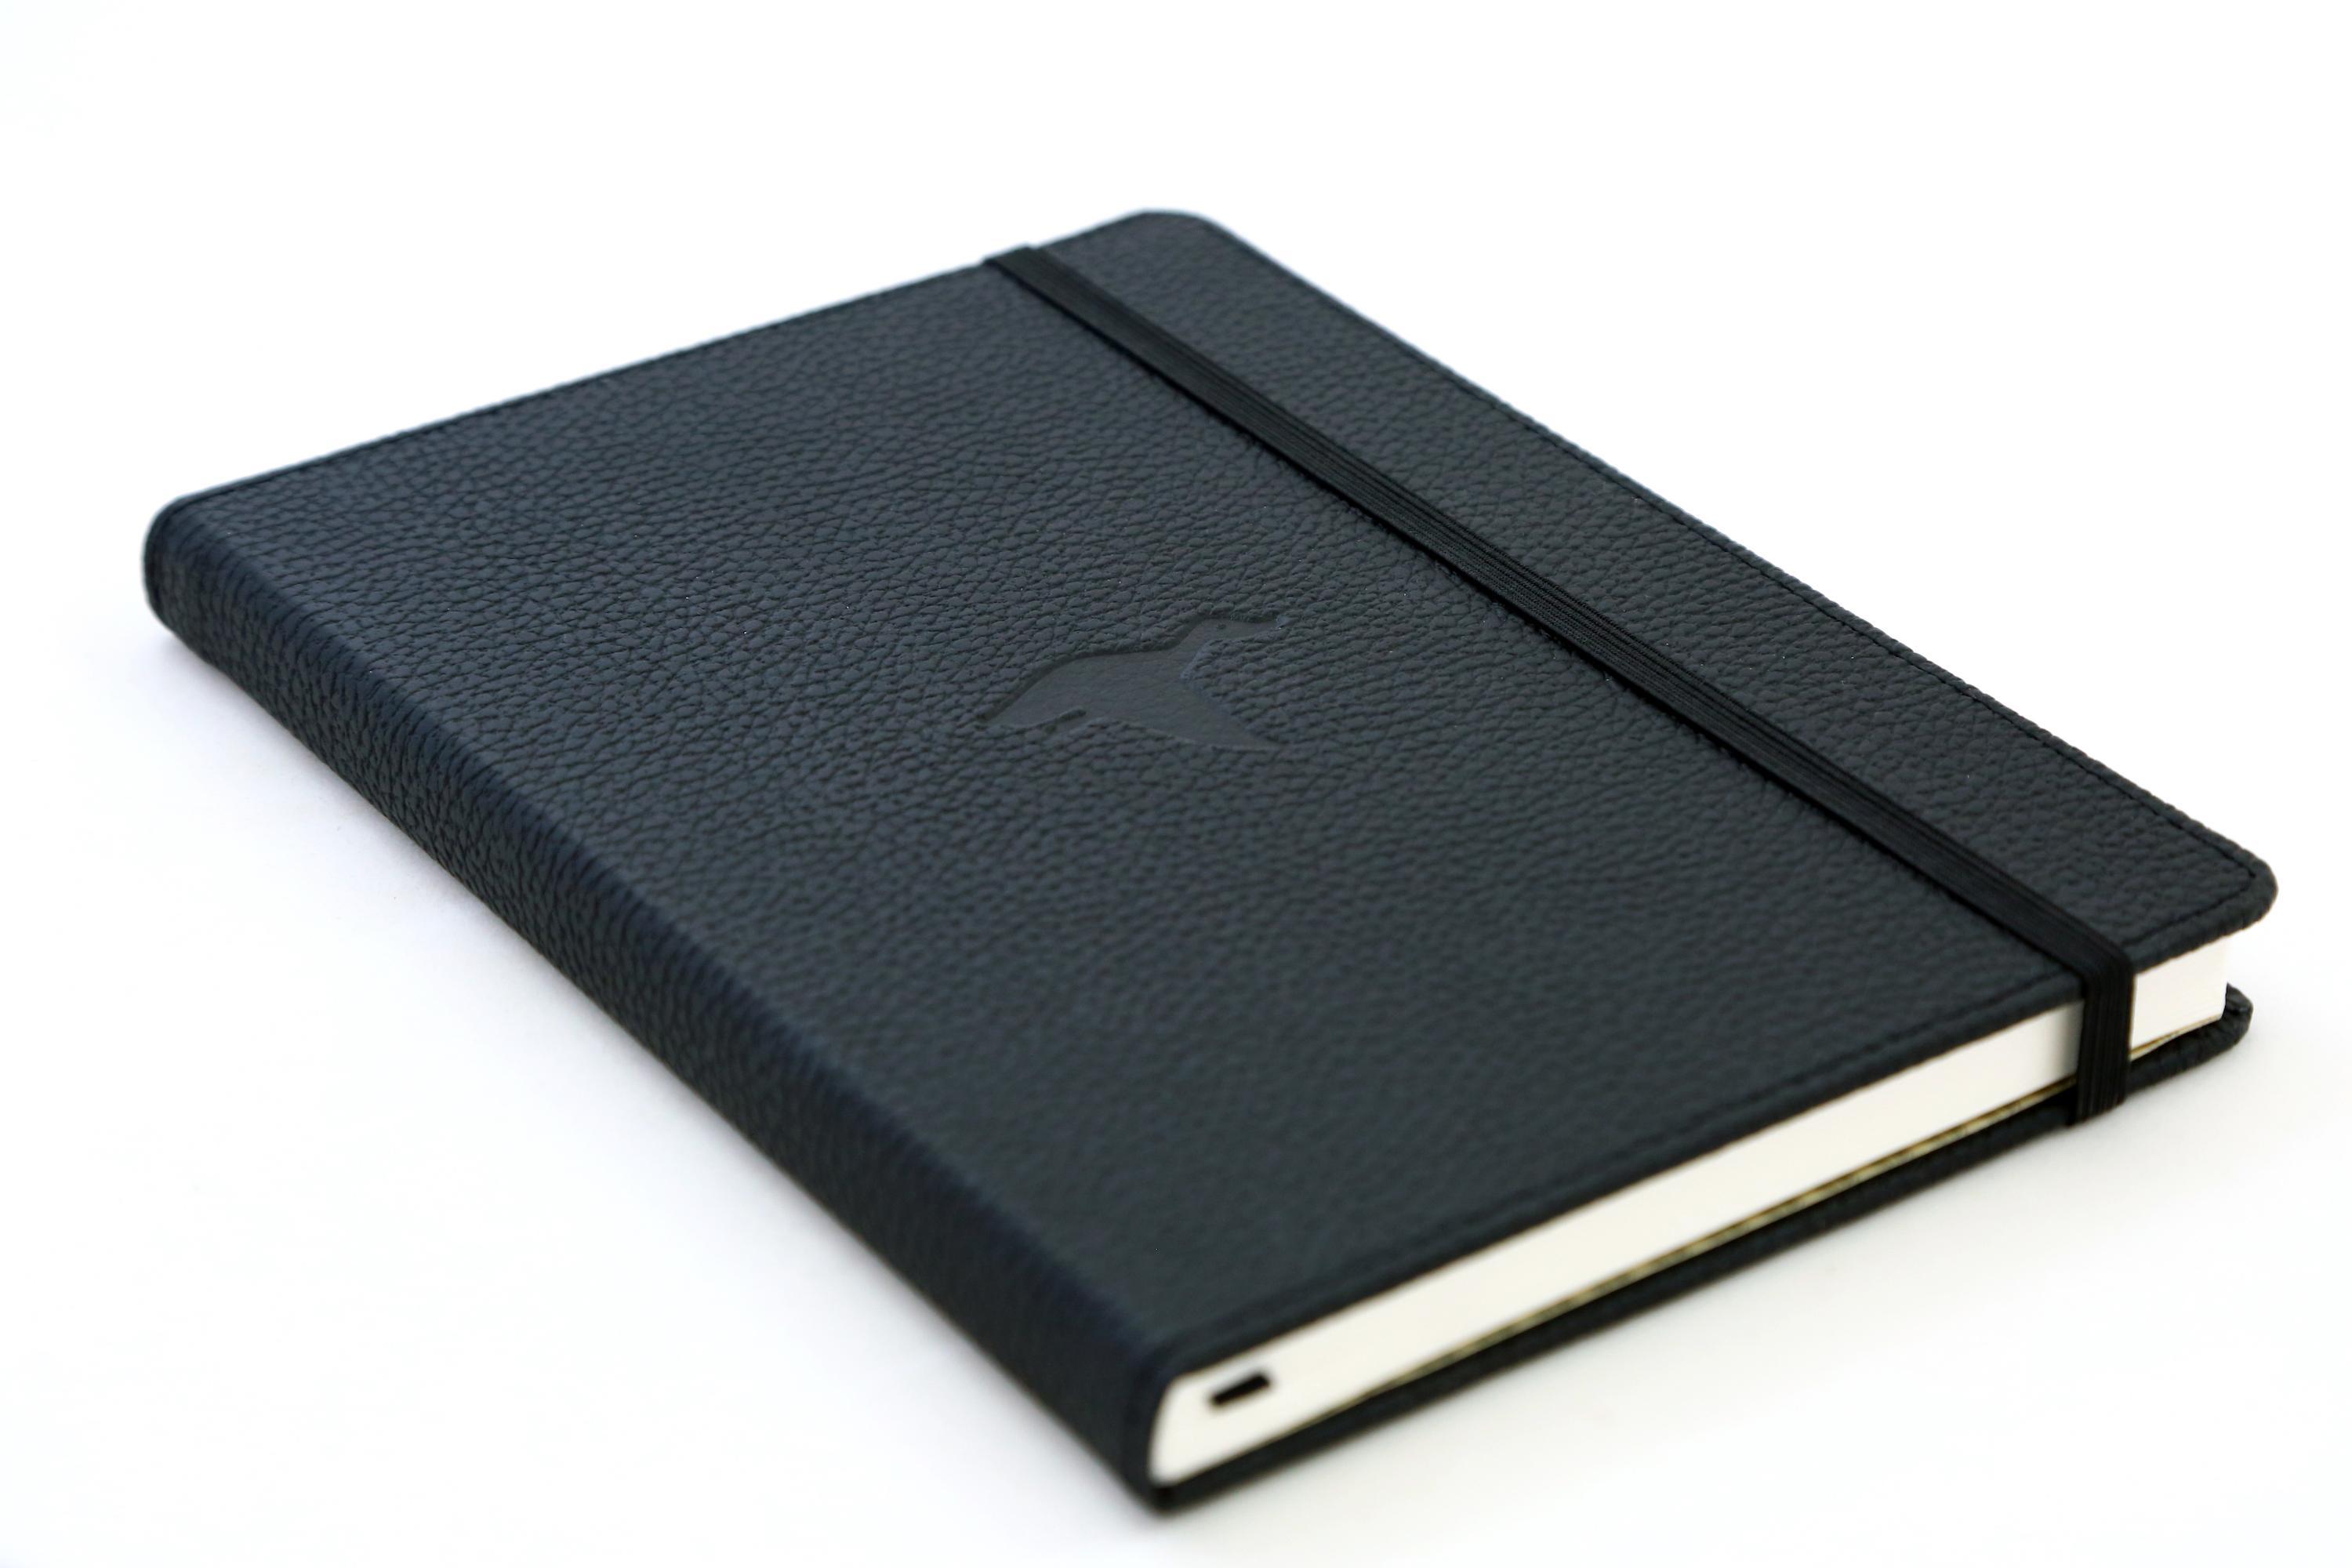 Dingbats Wildlife A5+ Black Duck Notebook - Plain